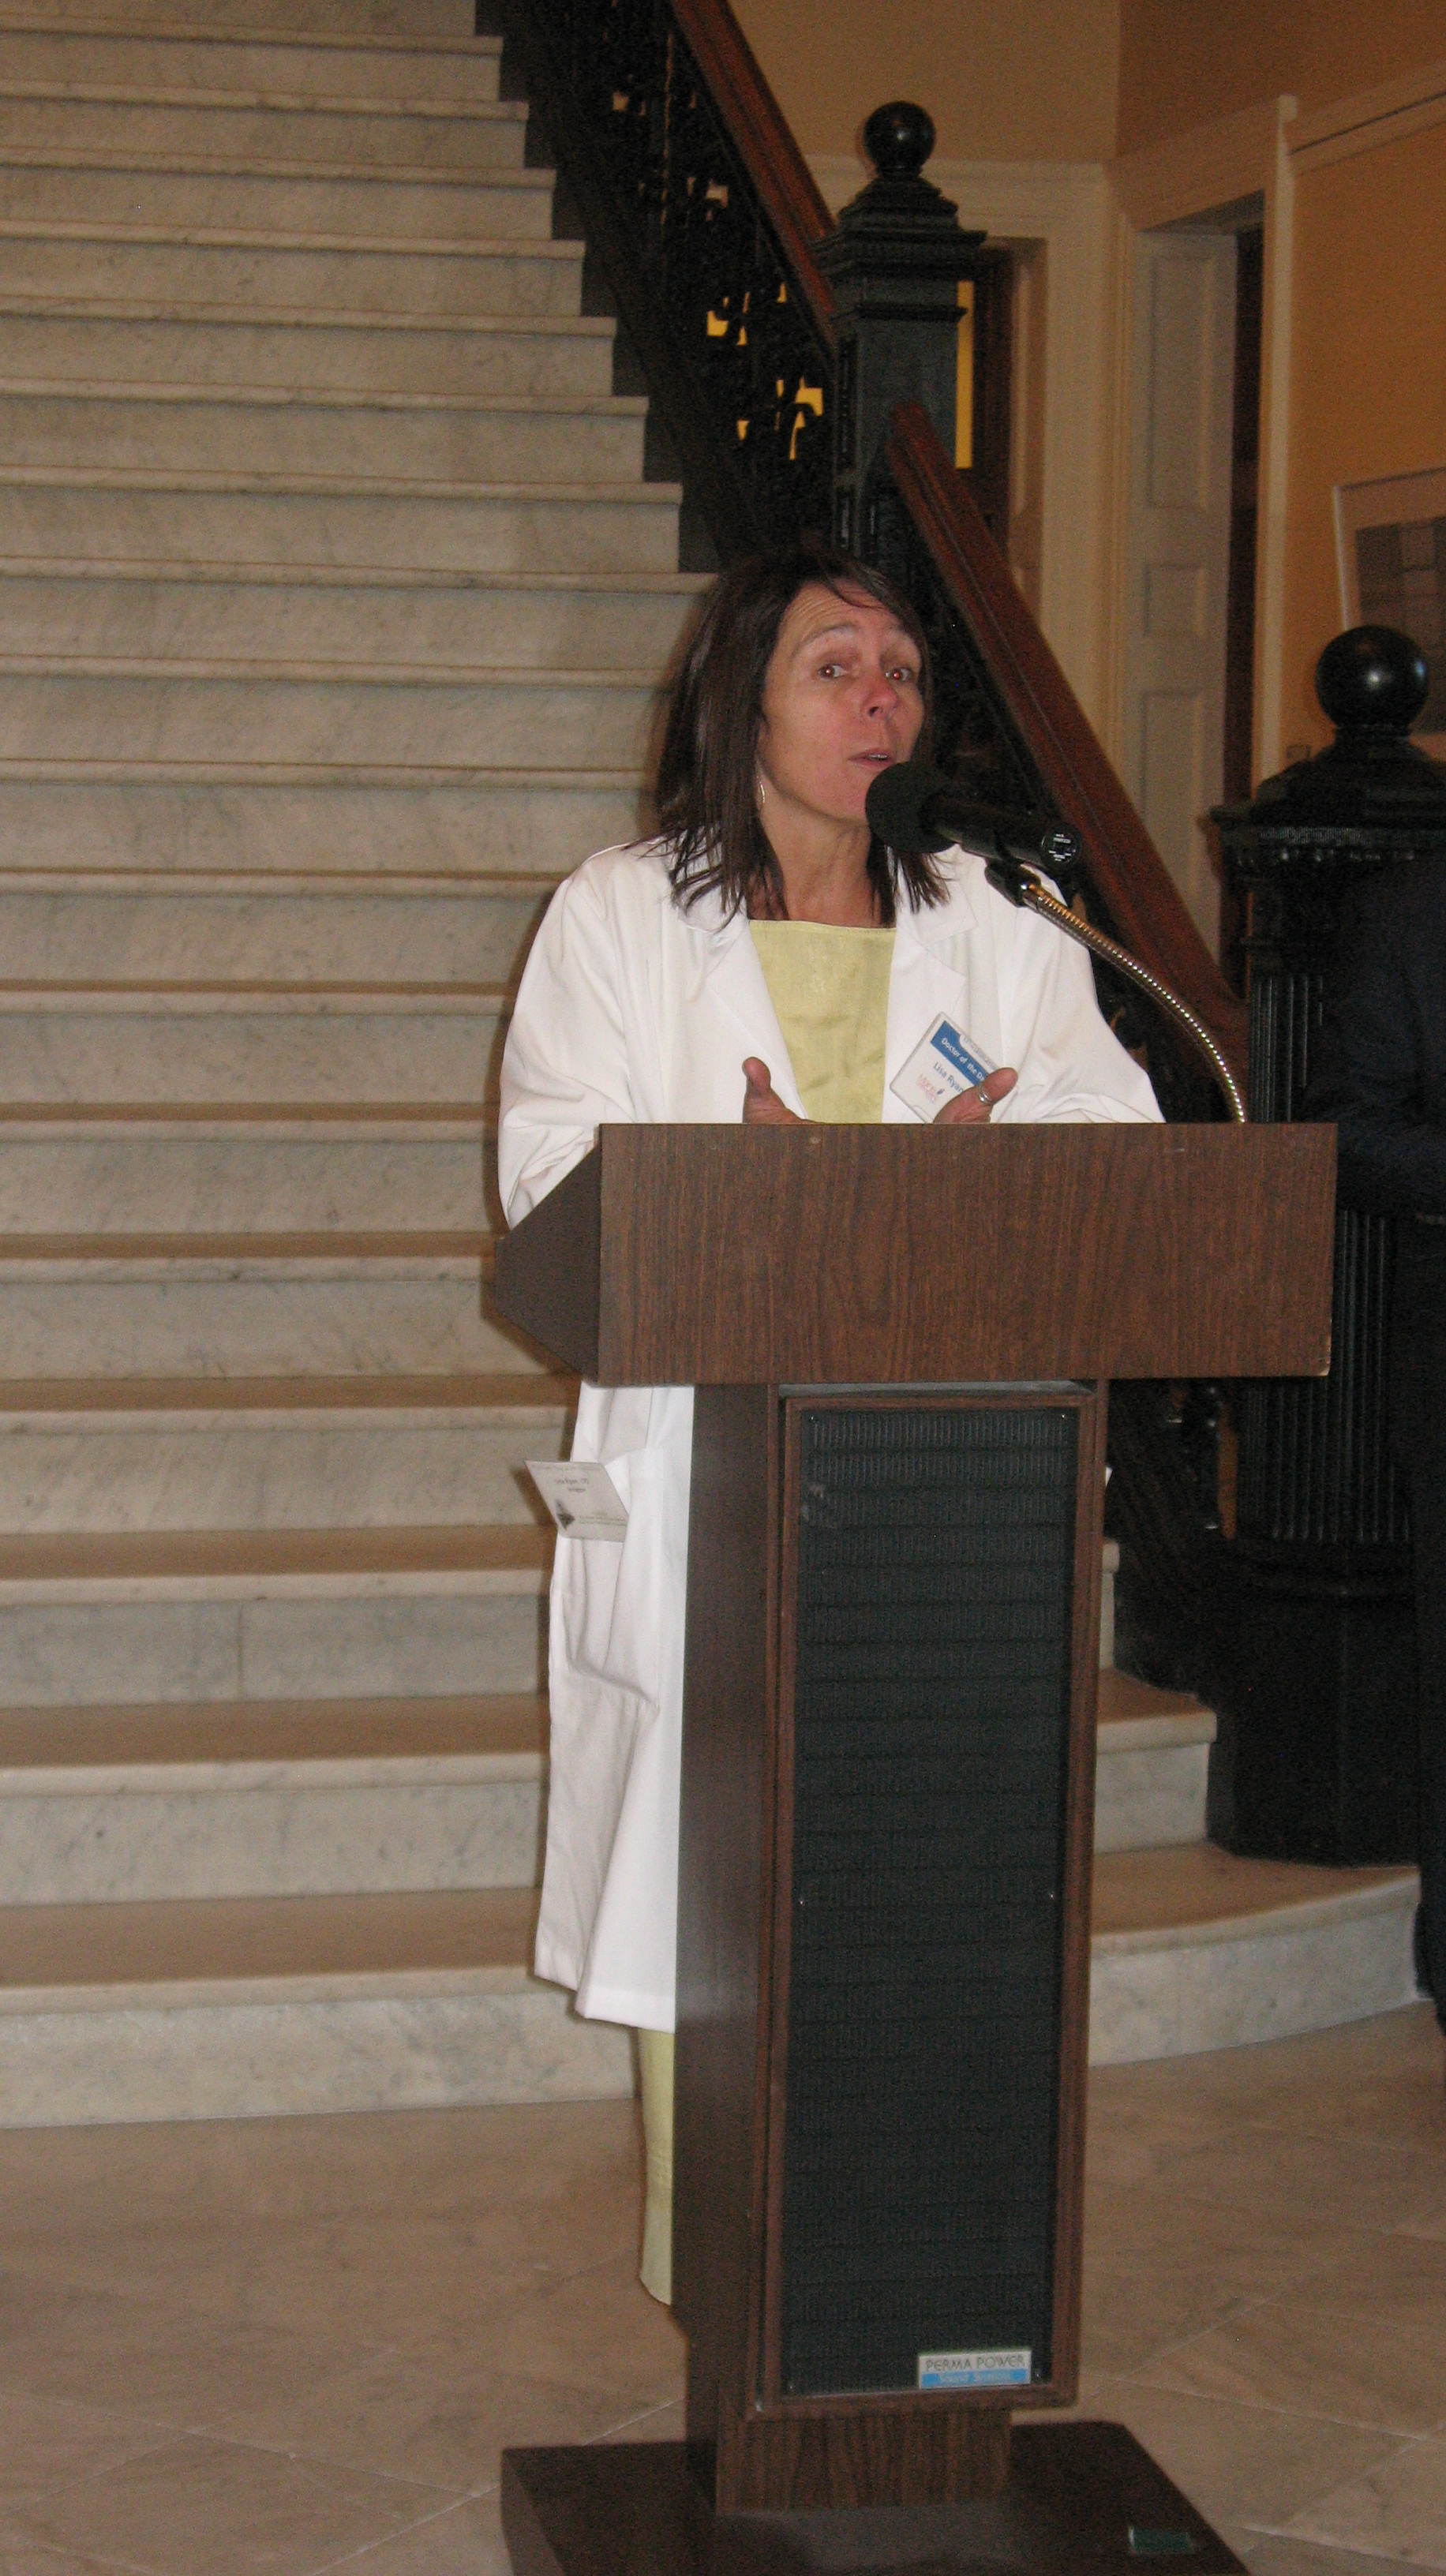 Lisa Ryan, DO, MMA President, addressing physicians.